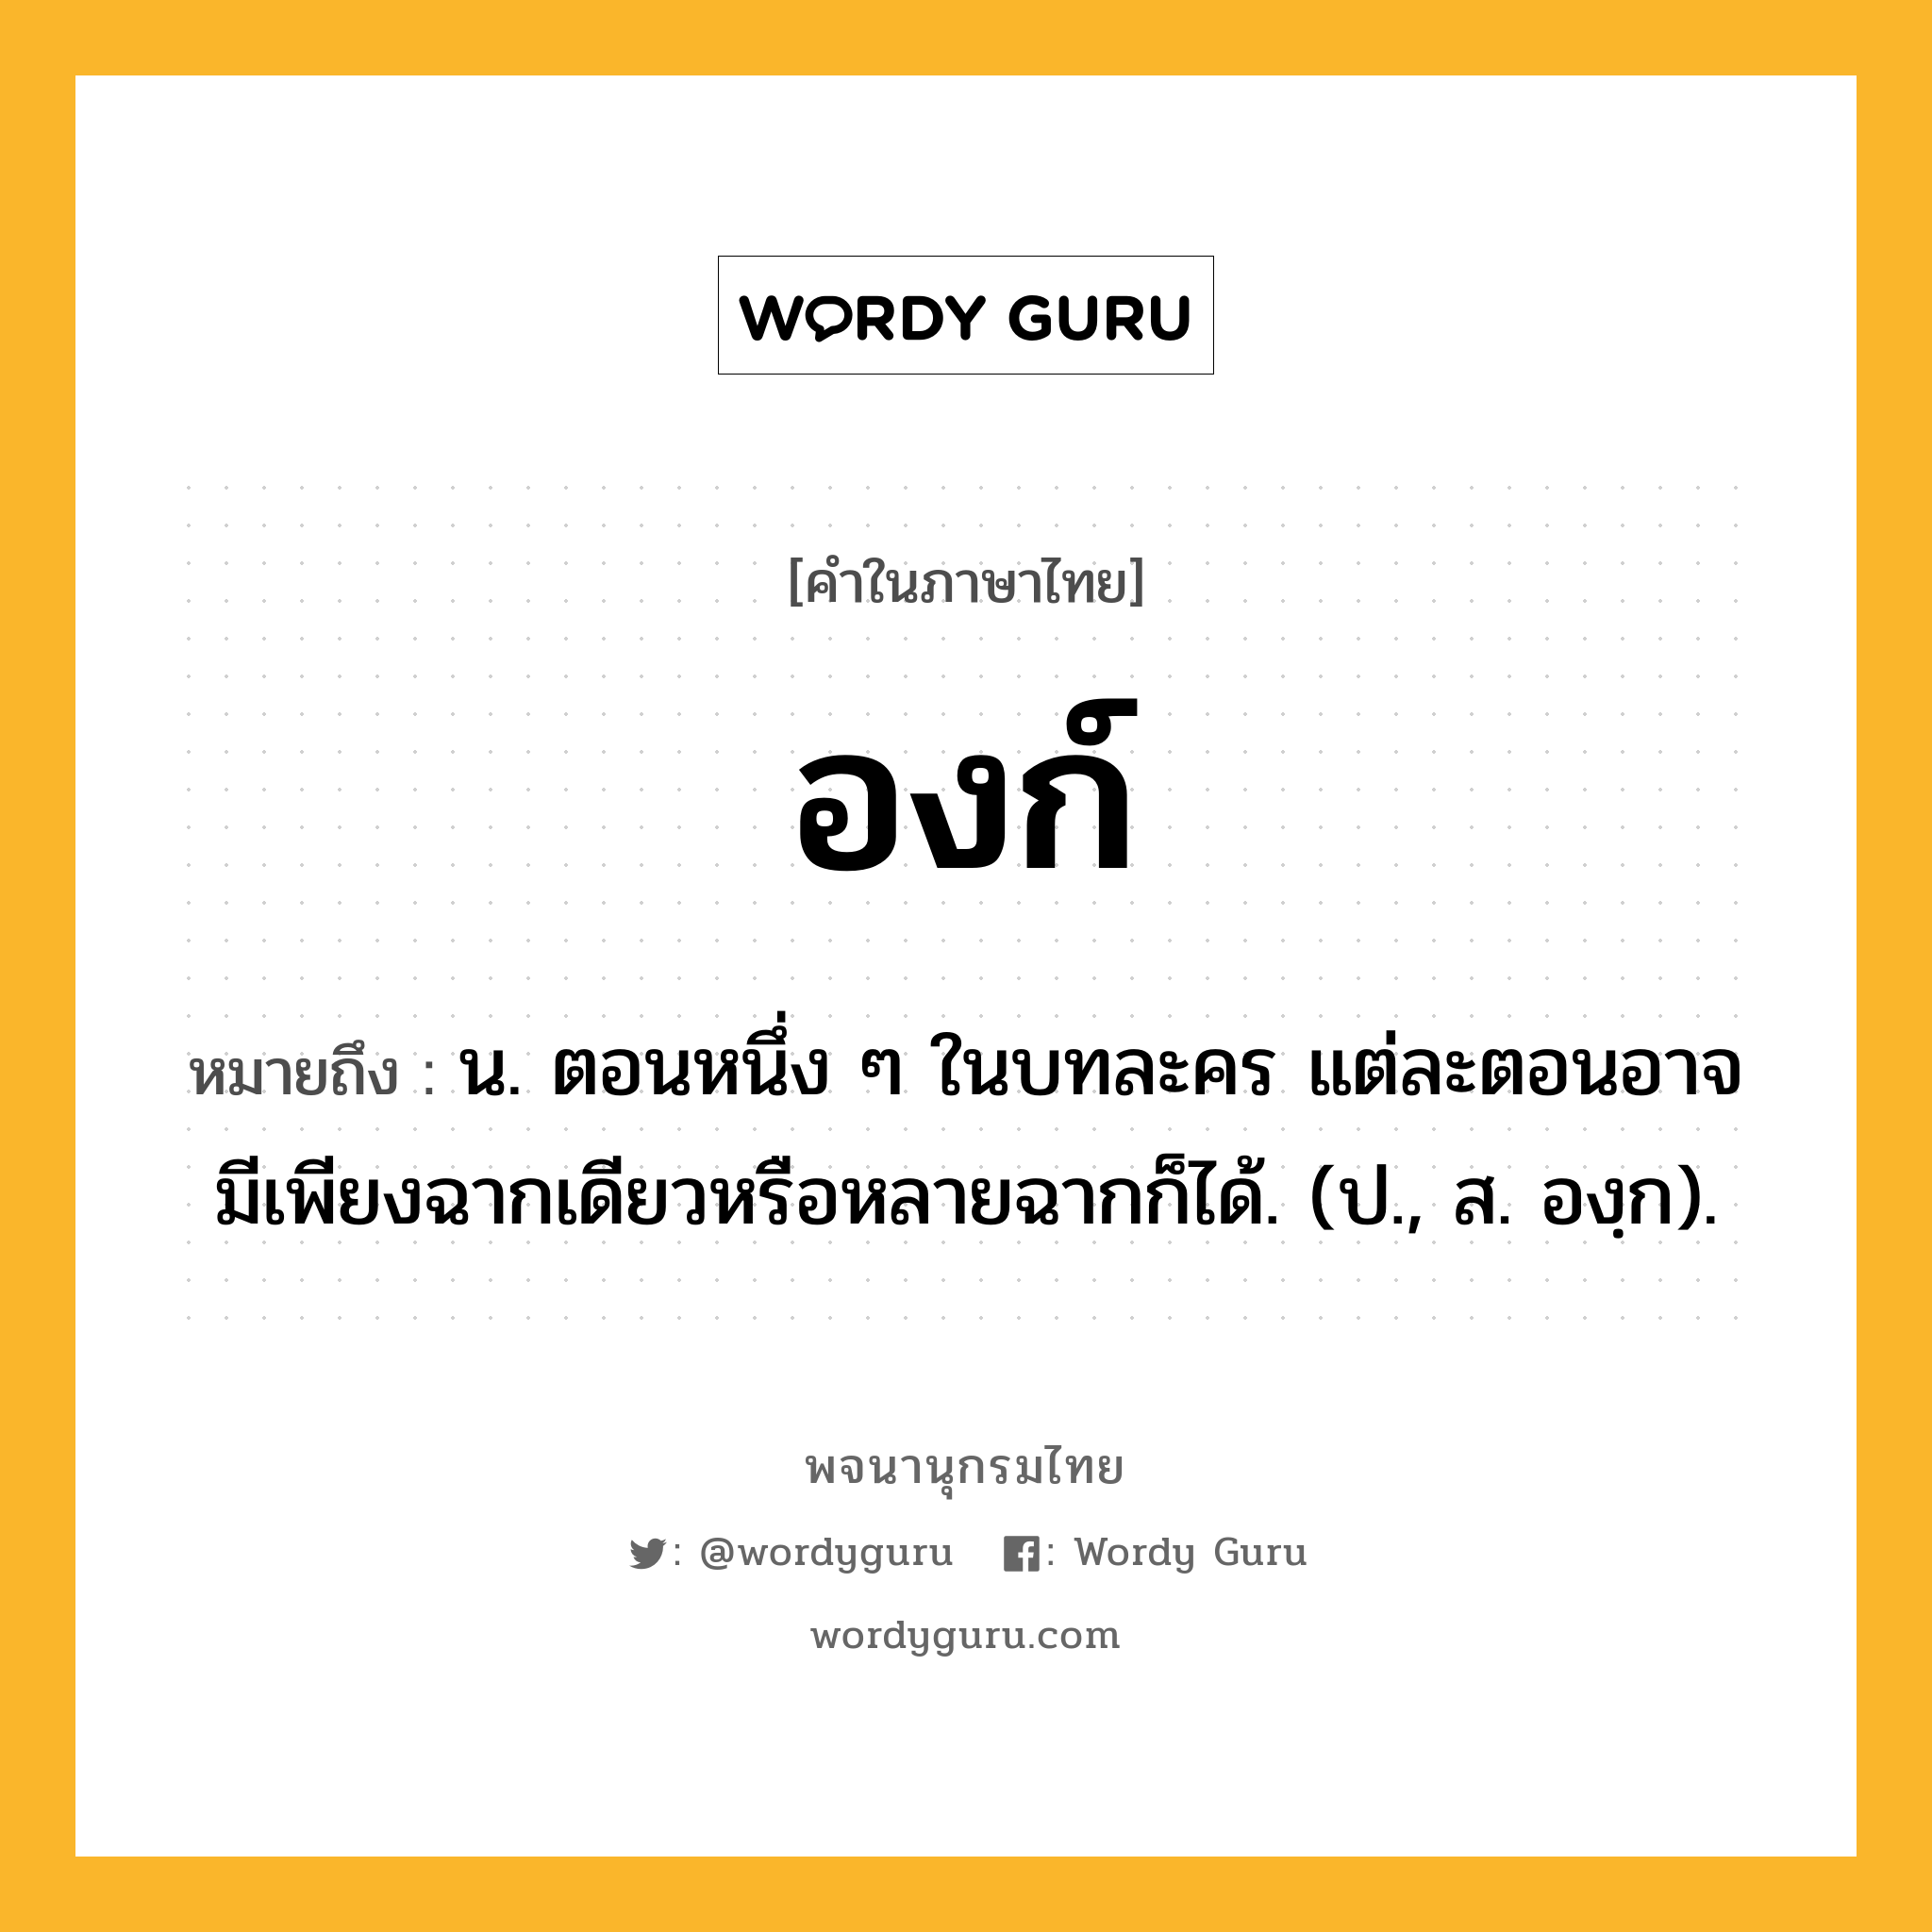 องก์ ความหมาย หมายถึงอะไร?, คำในภาษาไทย องก์ หมายถึง น. ตอนหนึ่ง ๆ ในบทละคร แต่ละตอนอาจมีเพียงฉากเดียวหรือหลายฉากก็ได้. (ป., ส. องฺก).